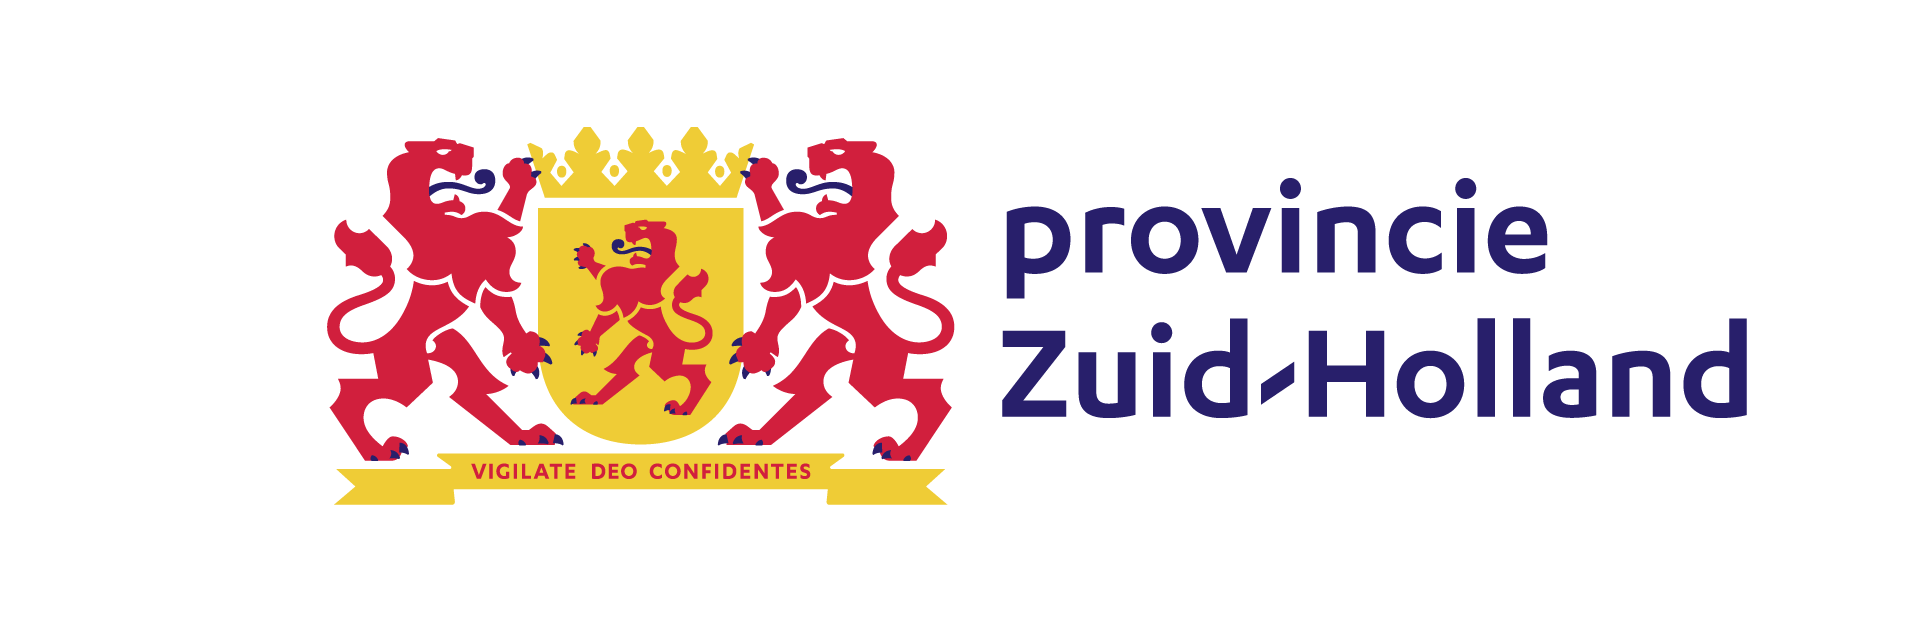 Het logo van de provincie Zuid-Holland